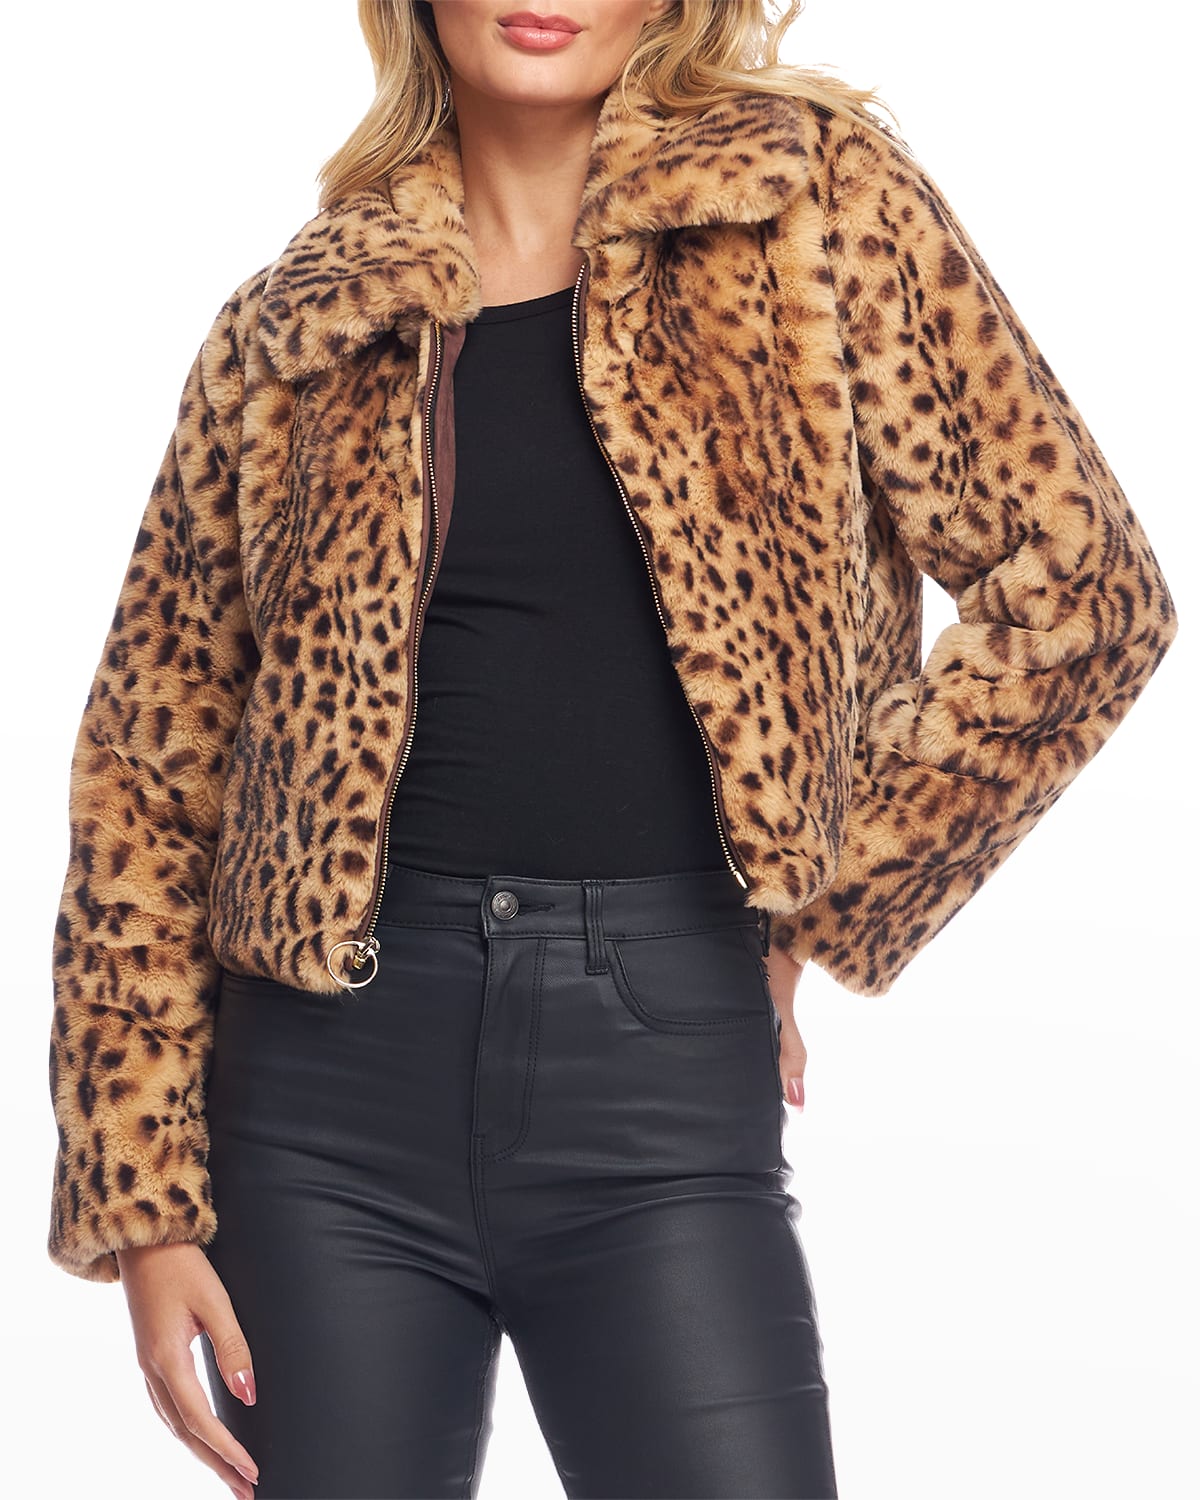 Fabulous Furs Wild Card Faux Leopard Jacket